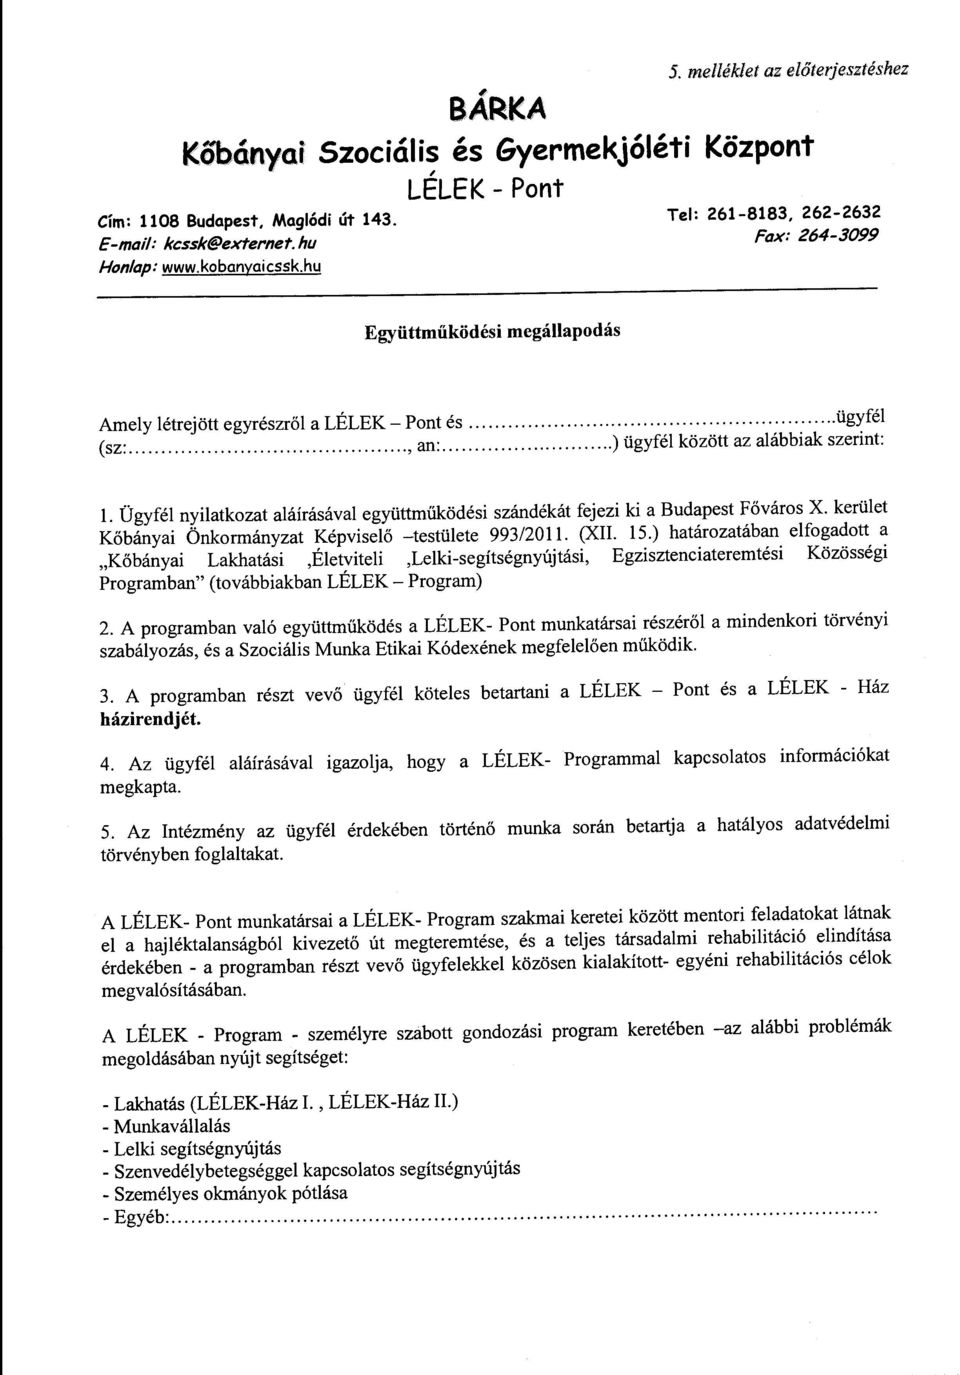 Ügyfél nyilatkozat aláírásával együttműködési szándékát fejezi ki a Budapest Főváros X. kerület Kőbányai Önkormányzat Képviselő -testülete 993/2011. (XII. 15.